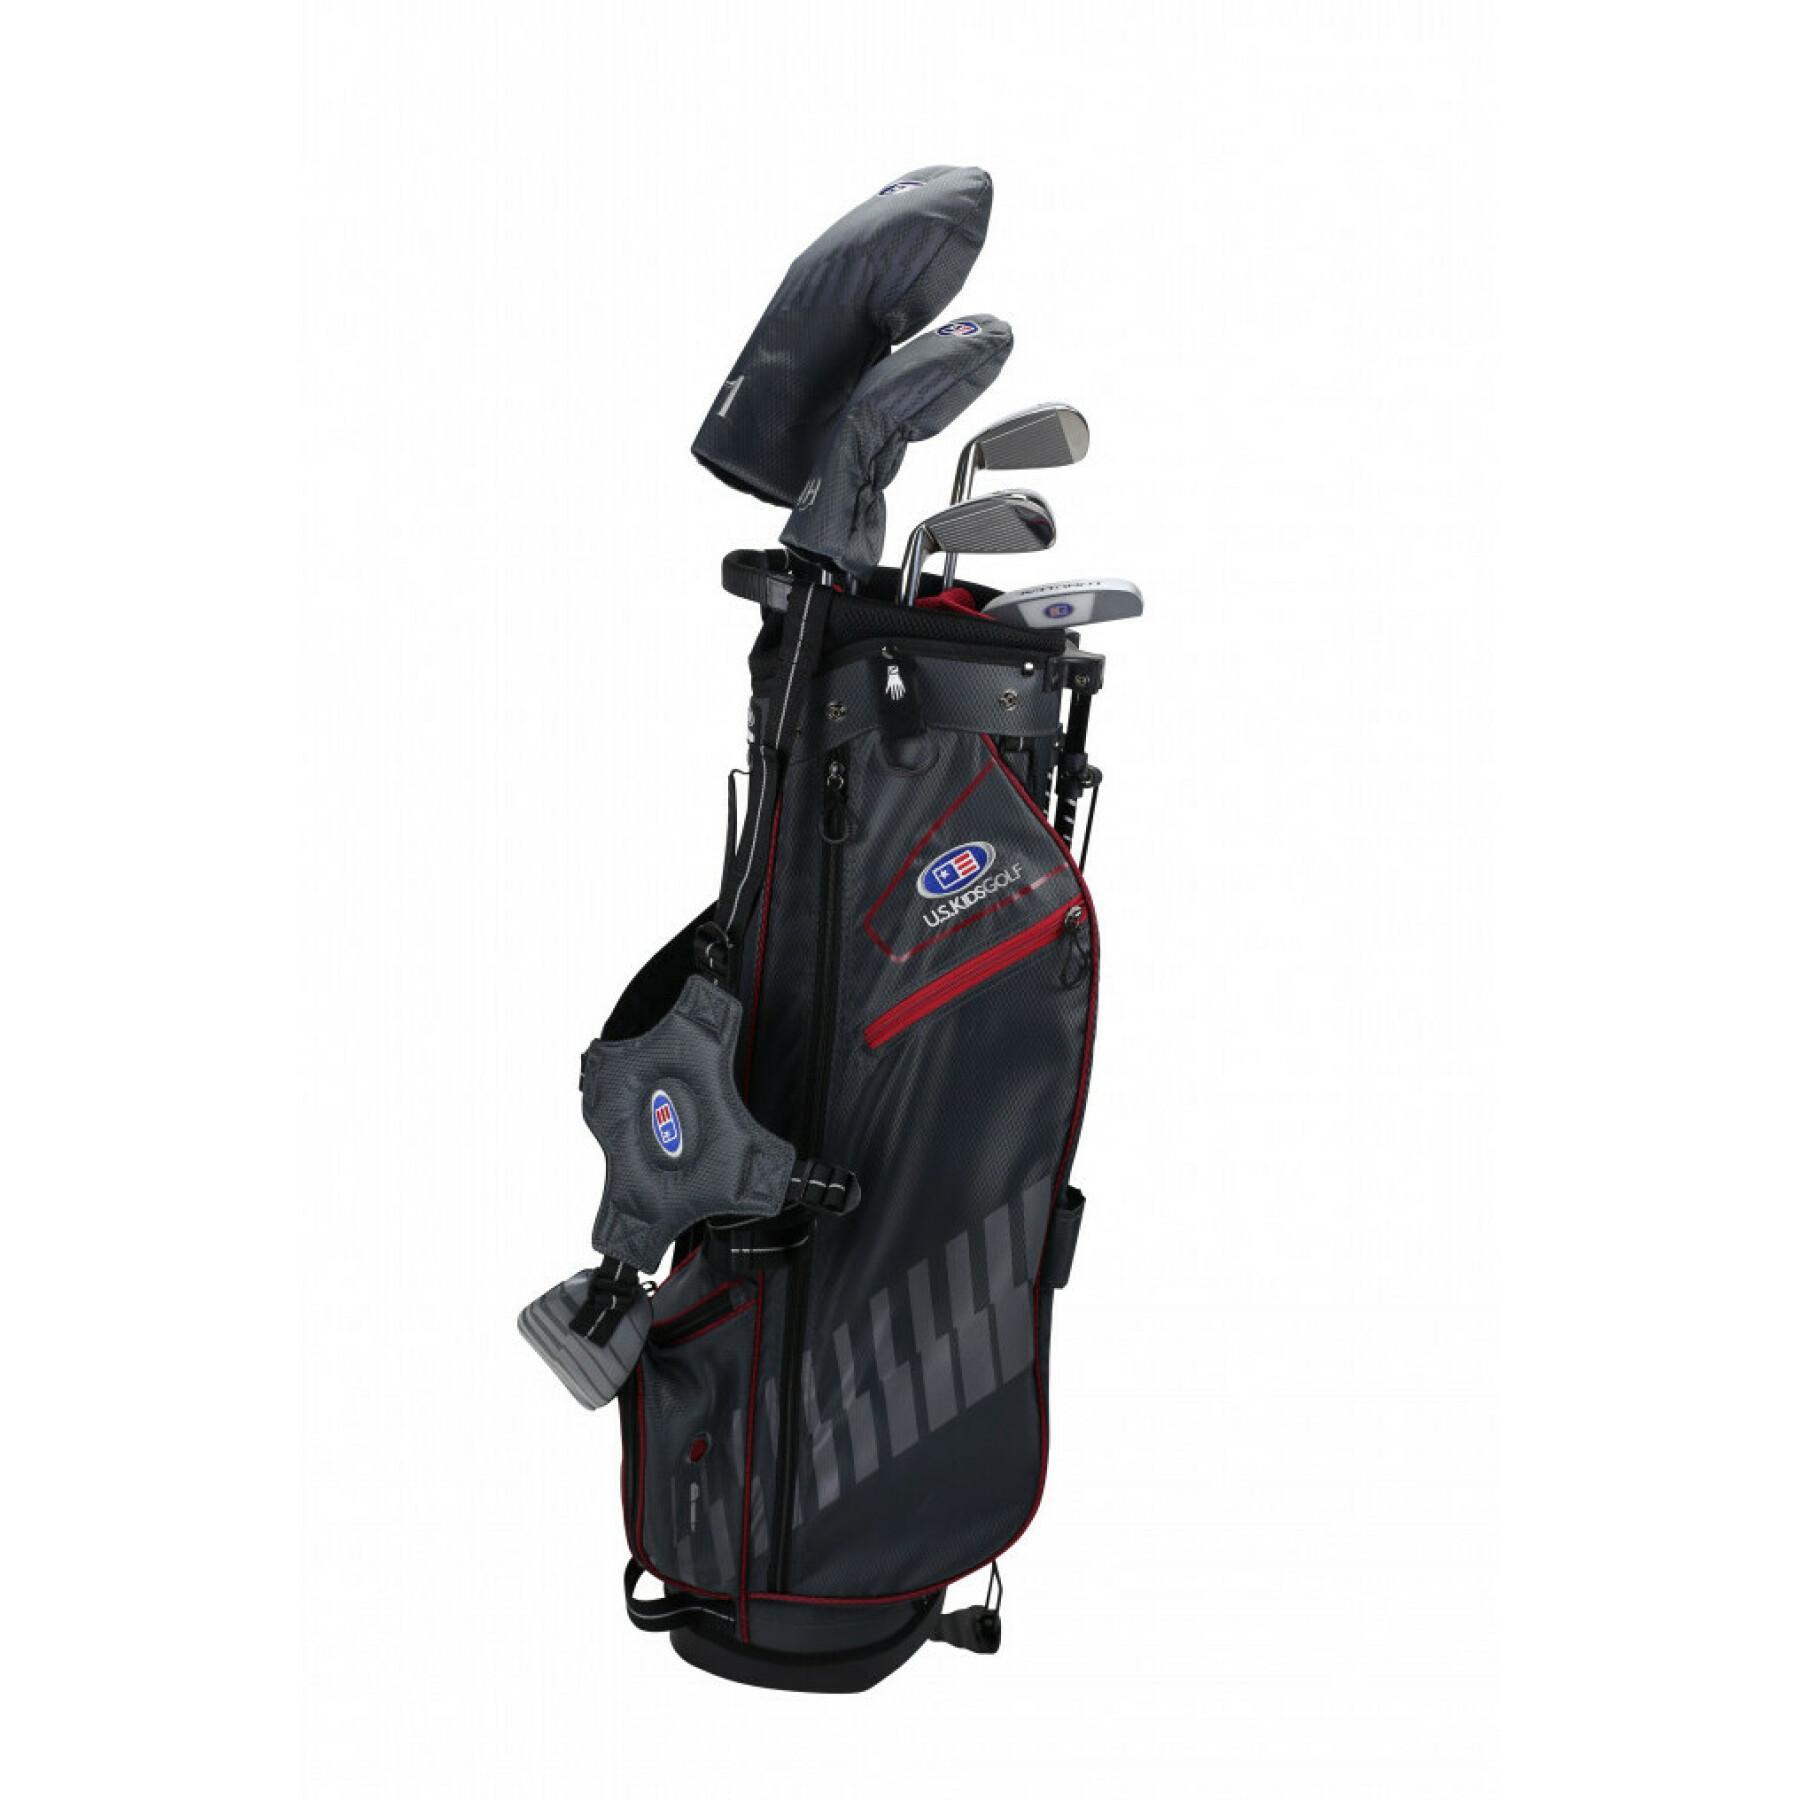 Kit (väska + 5 klubbor) vänsterhänt pojke U.S Kids Golf ultralight us60 2020